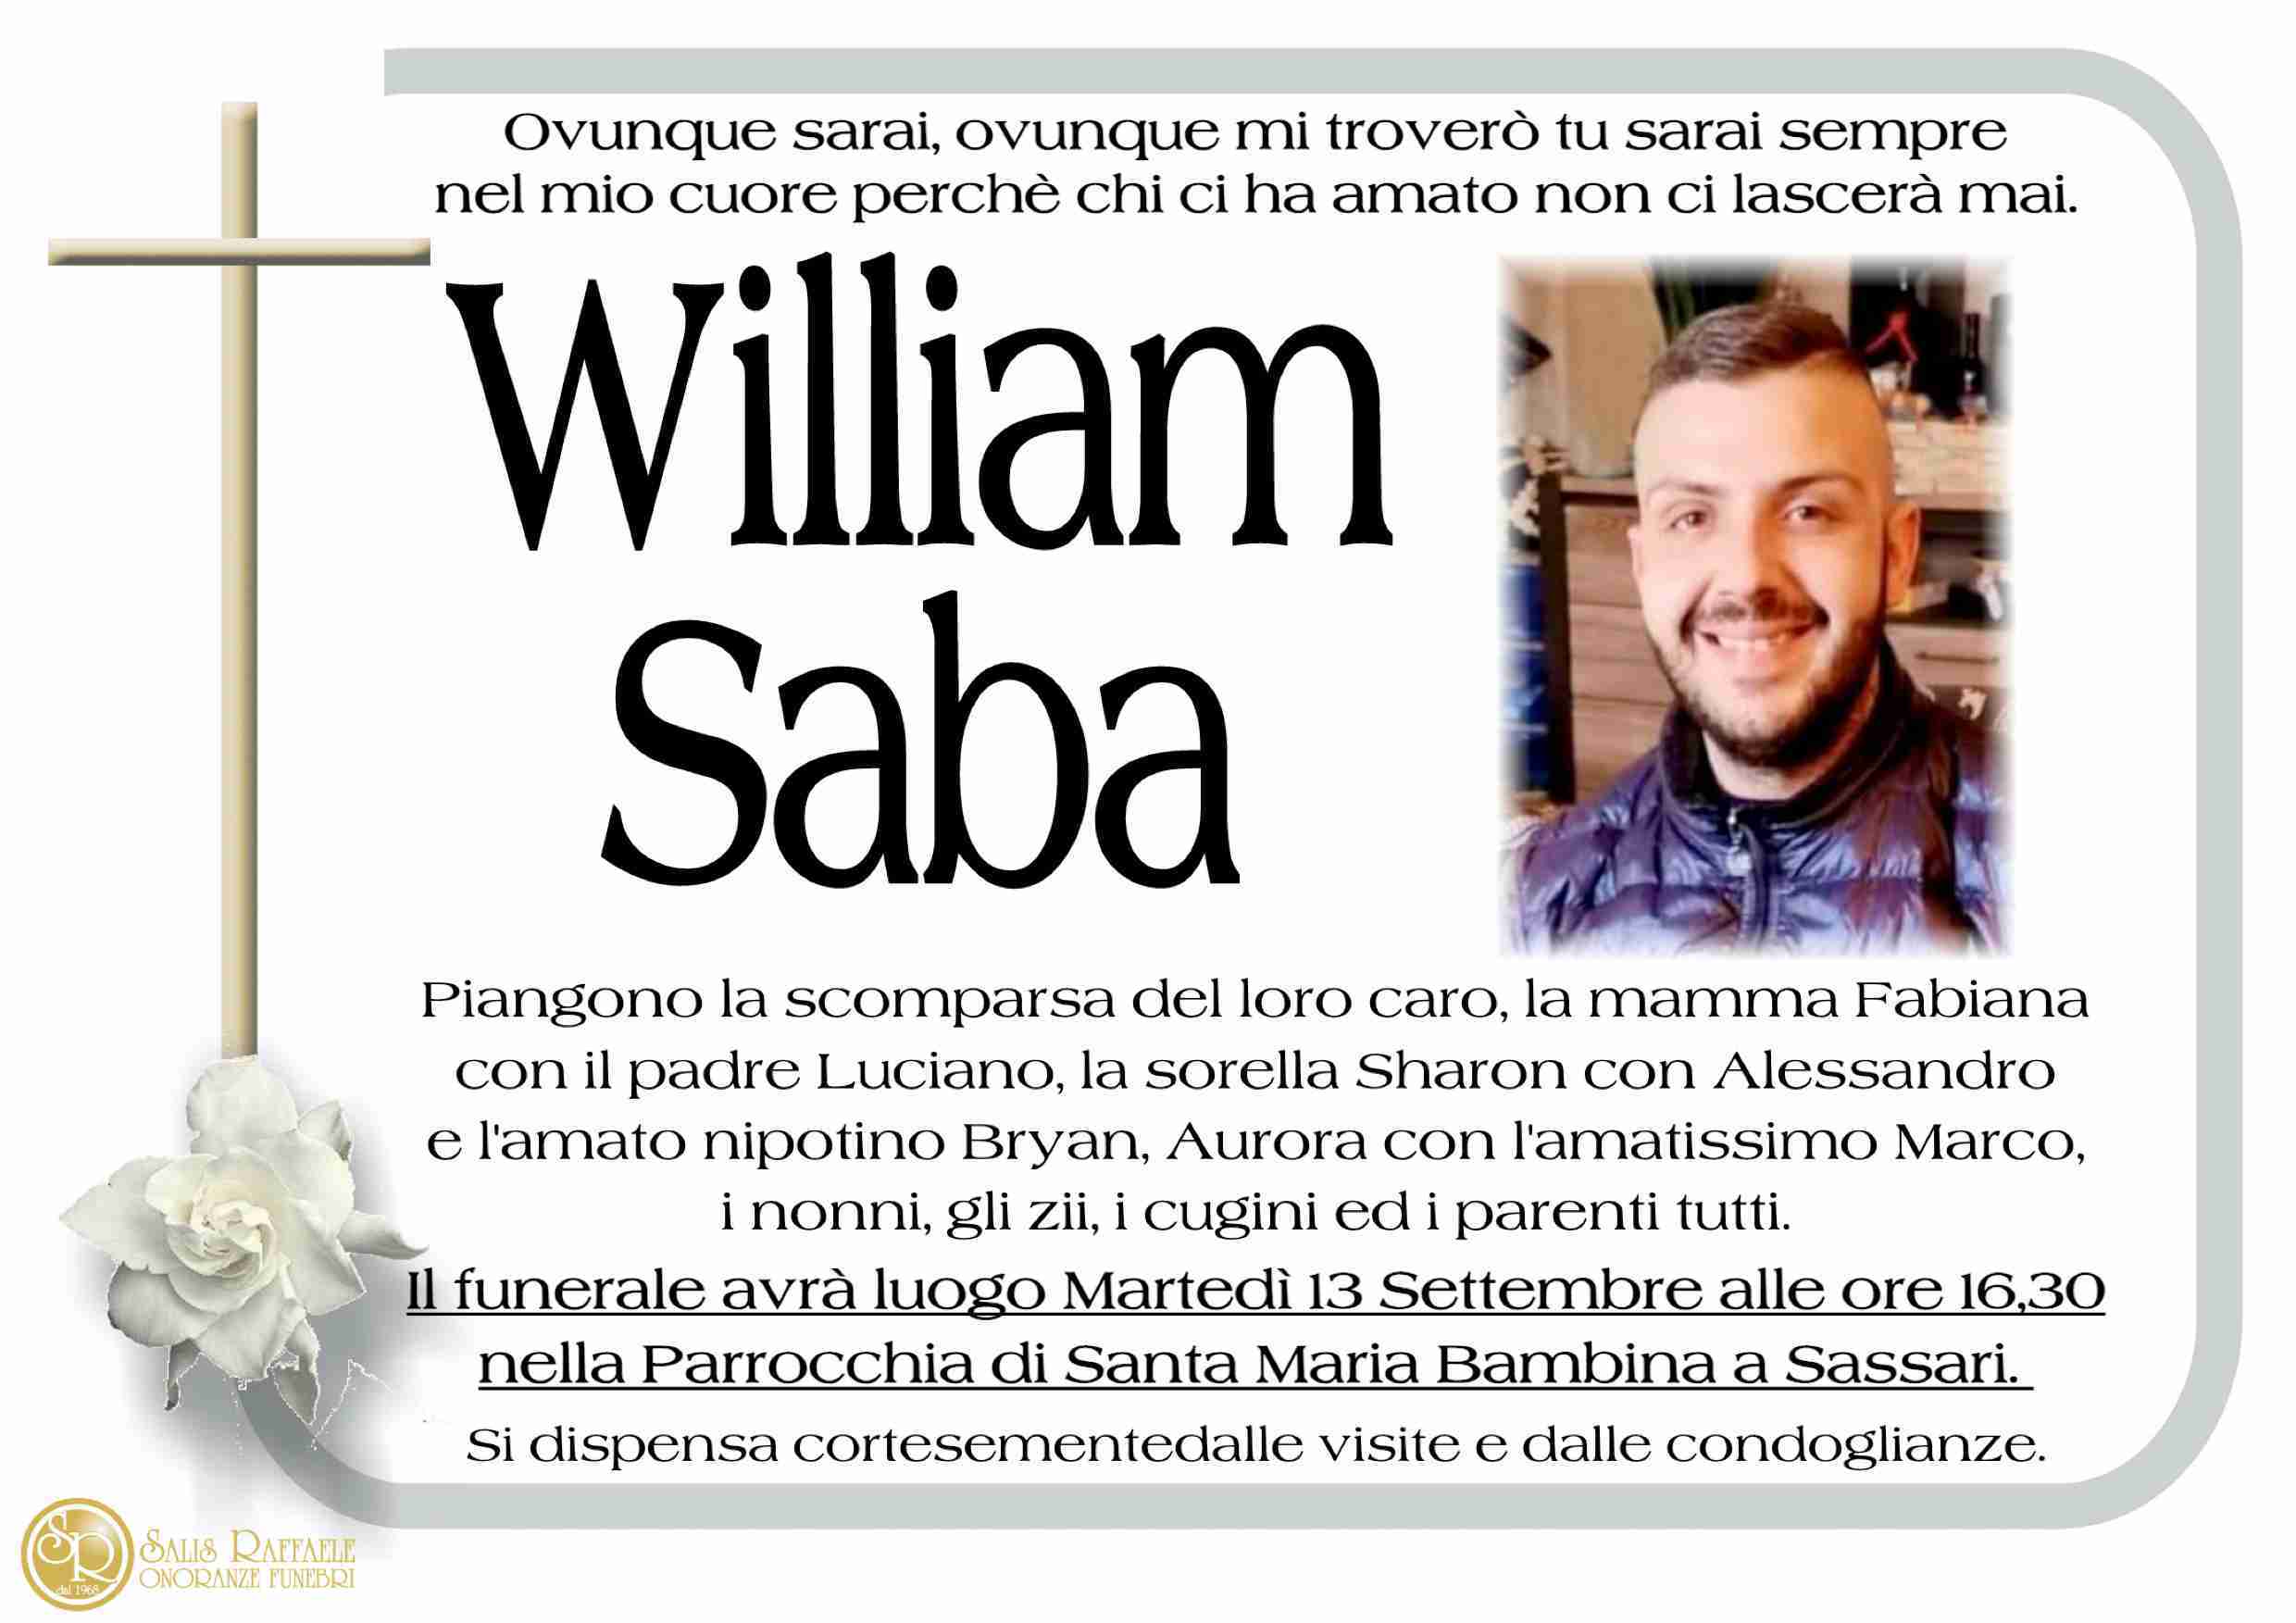 William Saba